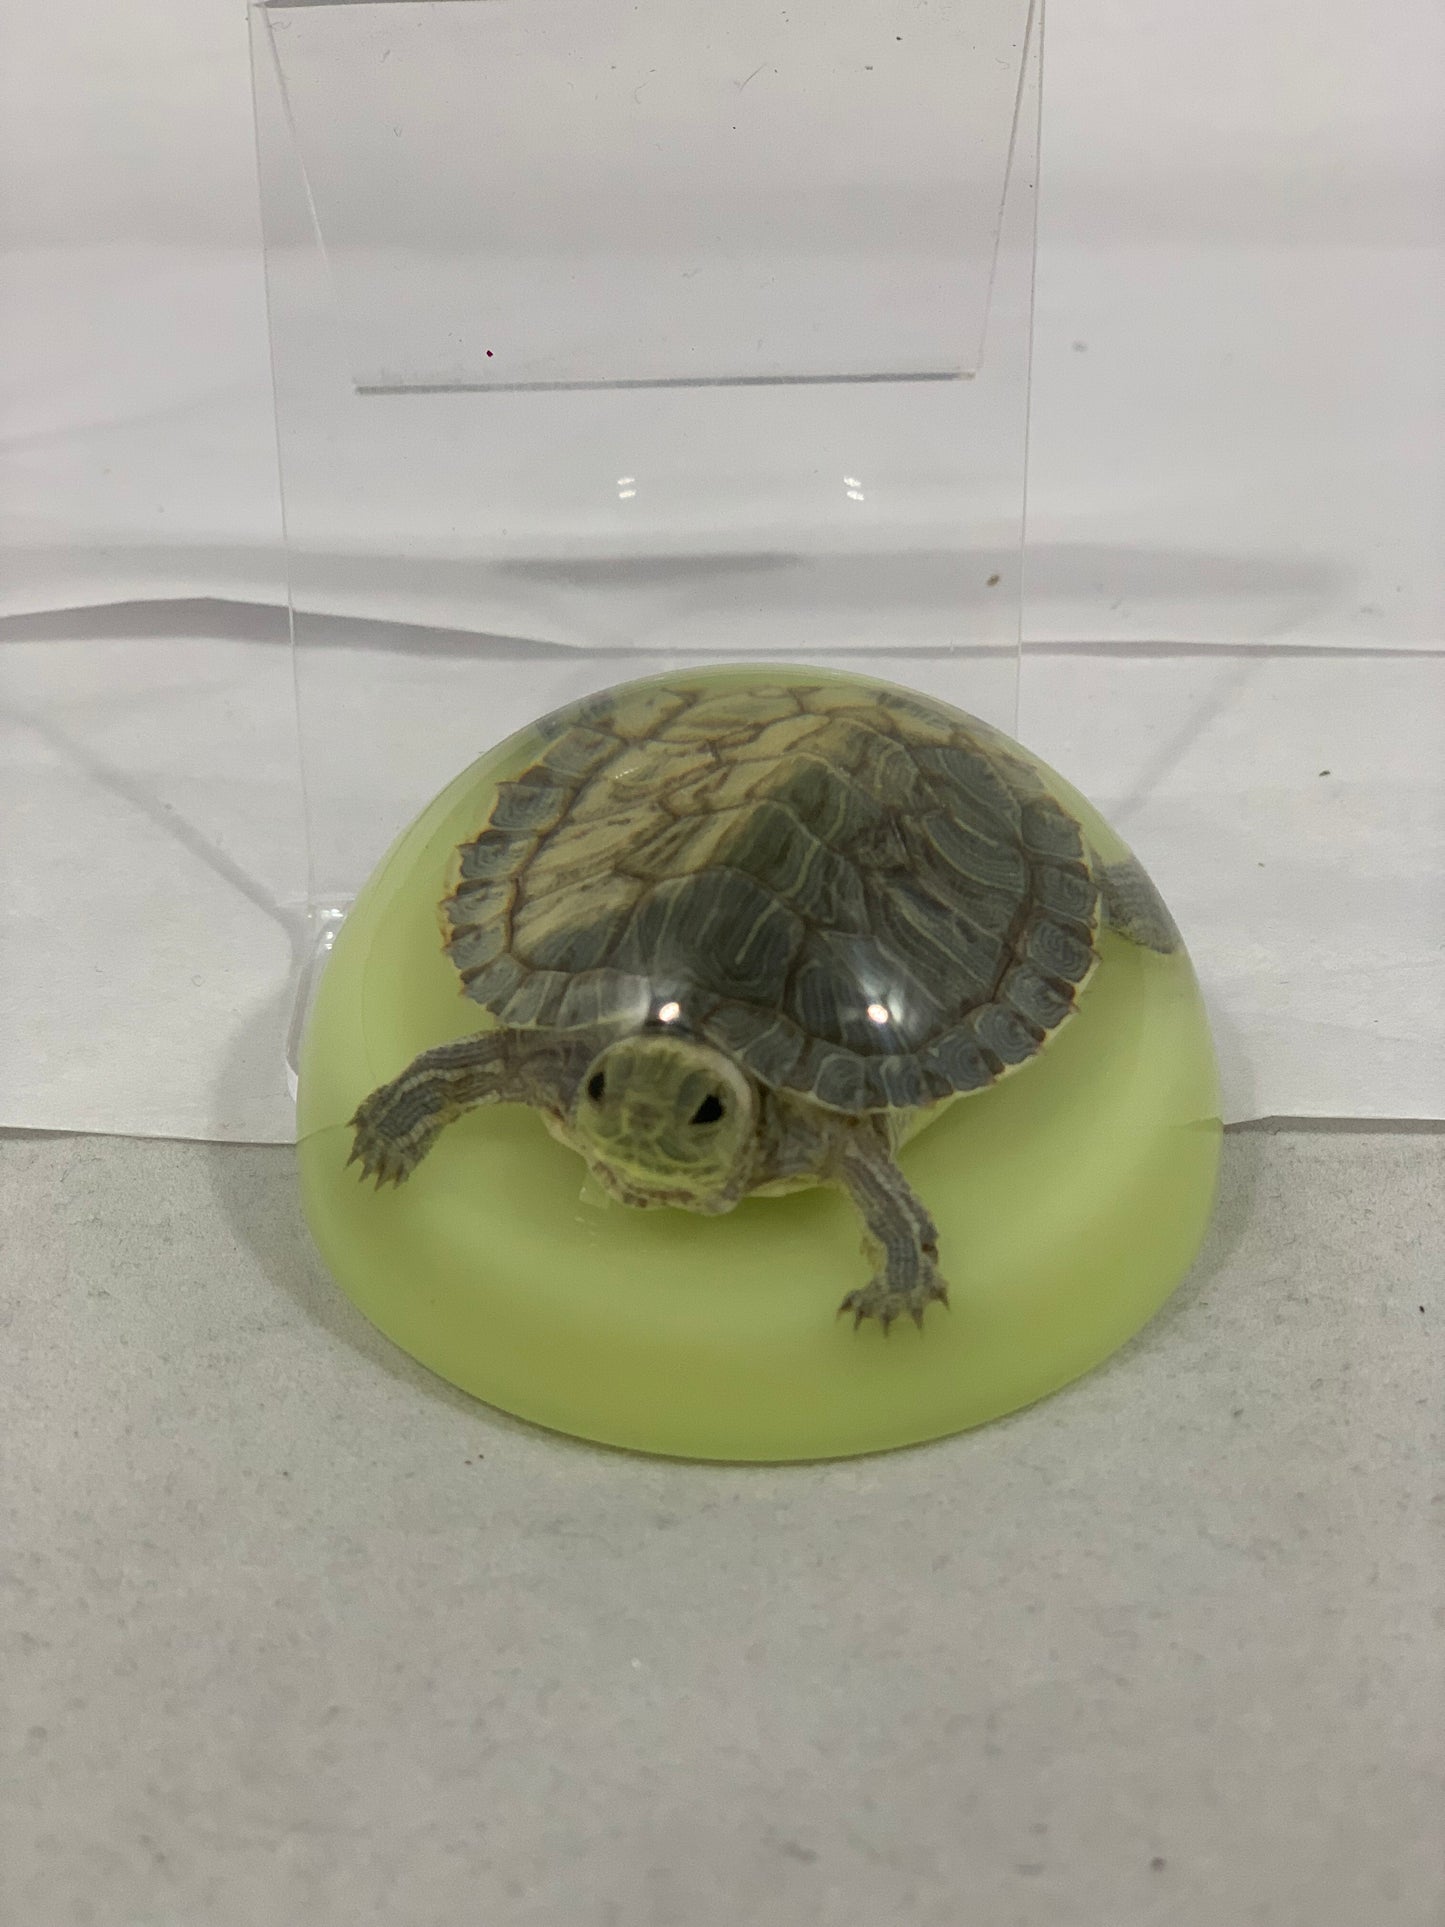 2.5" Tortoise Half Globe Paperweight